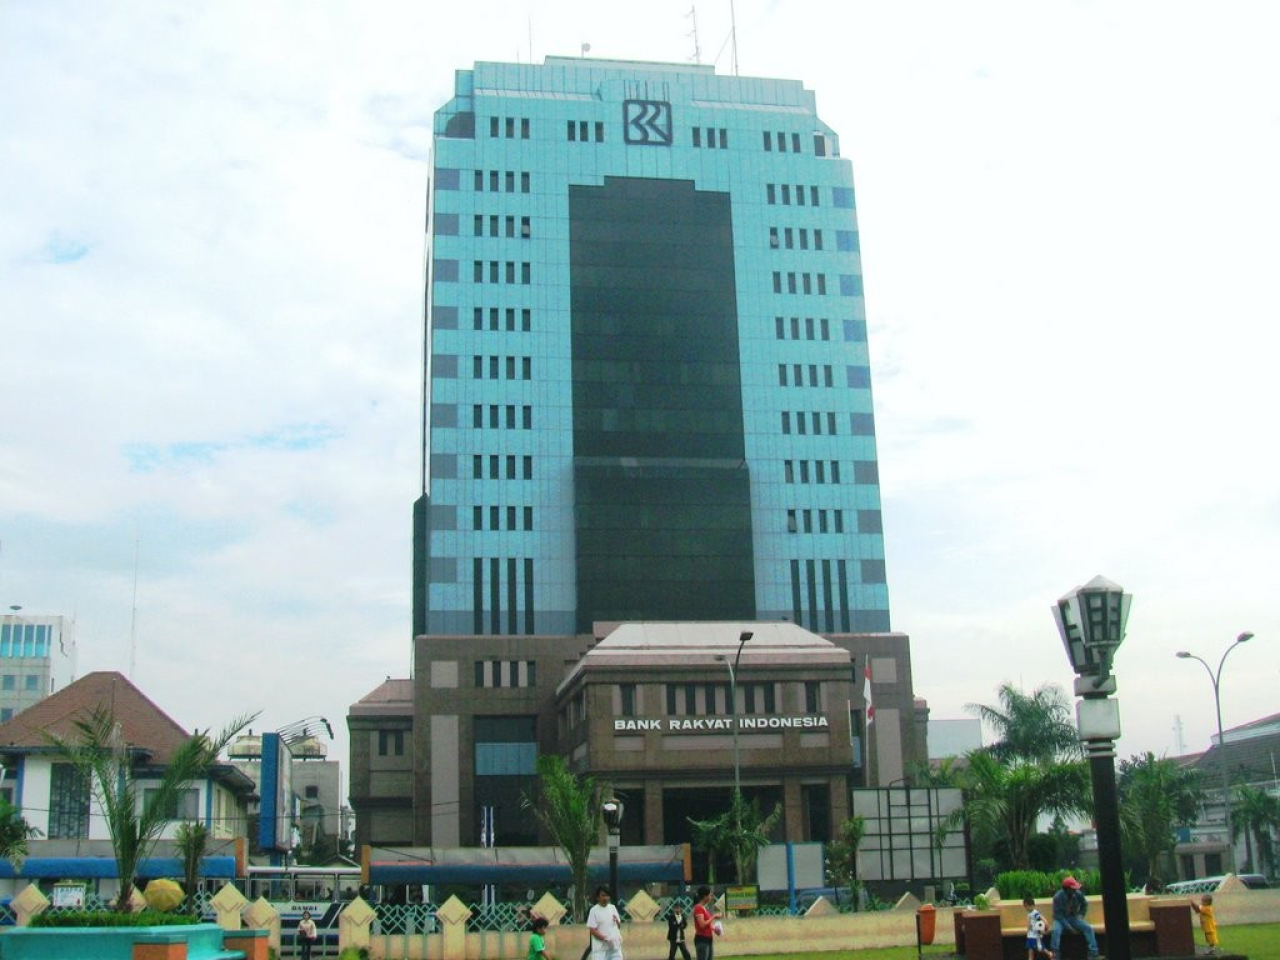 Lowongan Kerja PT Bank Rakyat Indonesia, Yuk Daftar!